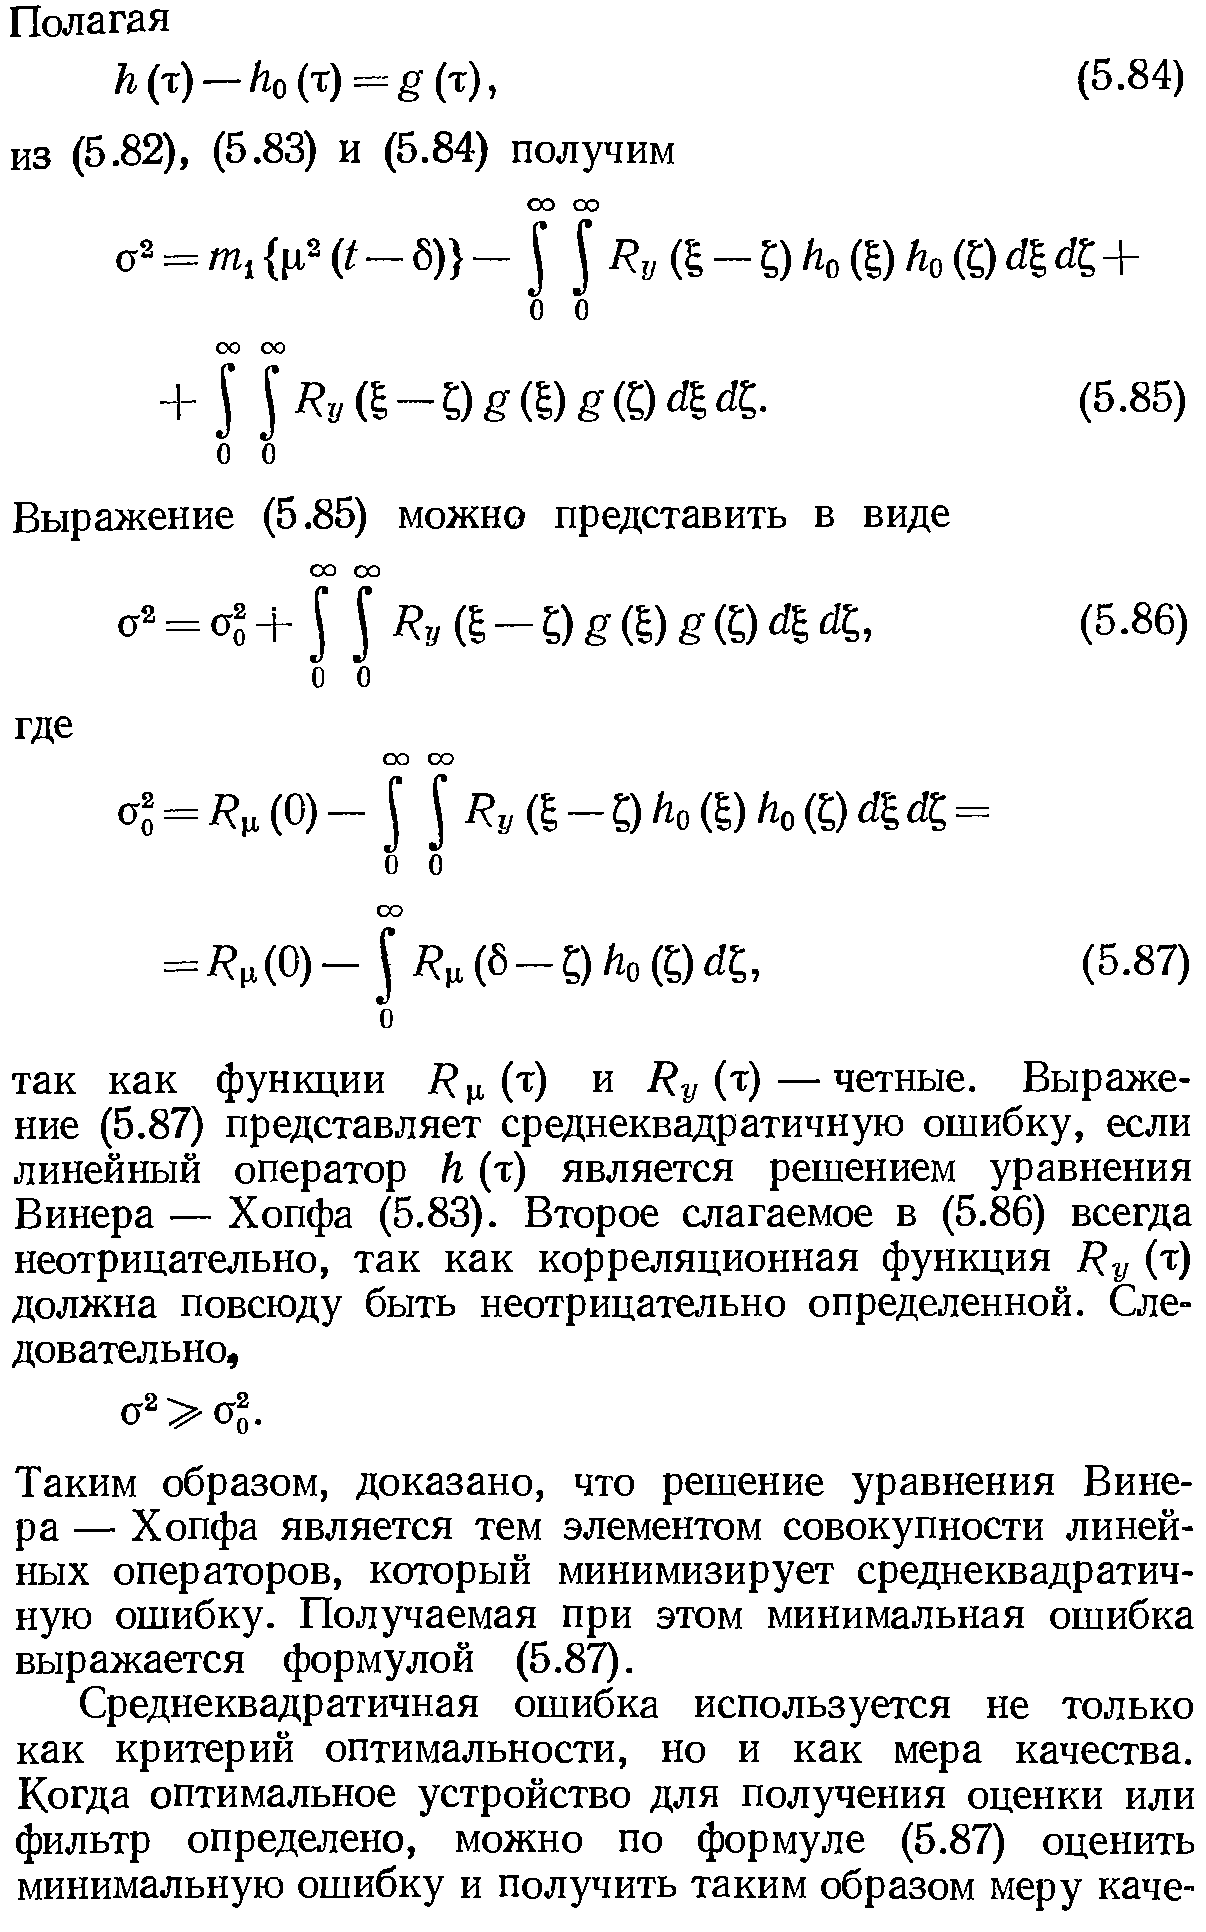 Таким образом, доказано, что решение уравнения Винера — Хопфа является тем элементом совокупности линейных операторов, который минимизирует среднеквадратичную ошибку. Получаемая при этом минимальная ошибка выражается формулой (5.87).